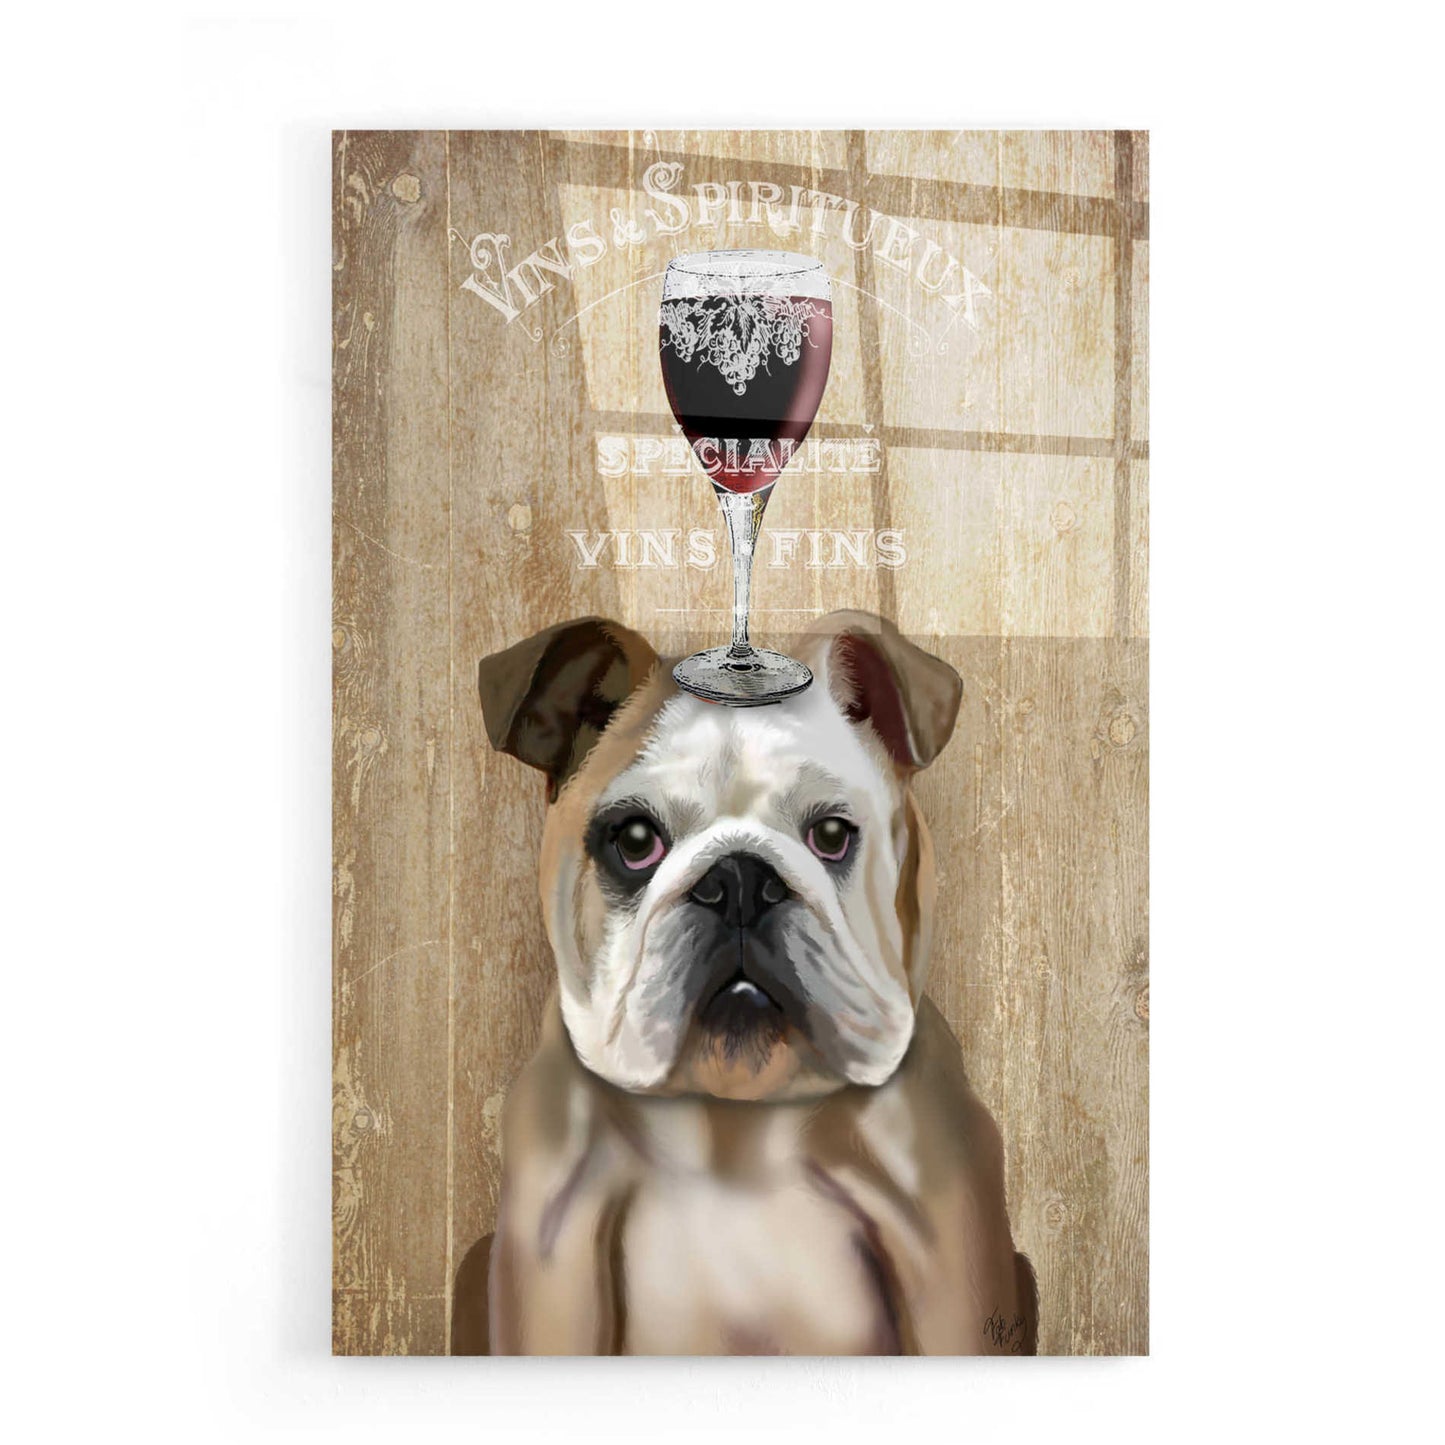 Epic Art 'Dog Au Vin, English Bulldog' by Fab Funky, Acrylic Glass Wall Art,16x24